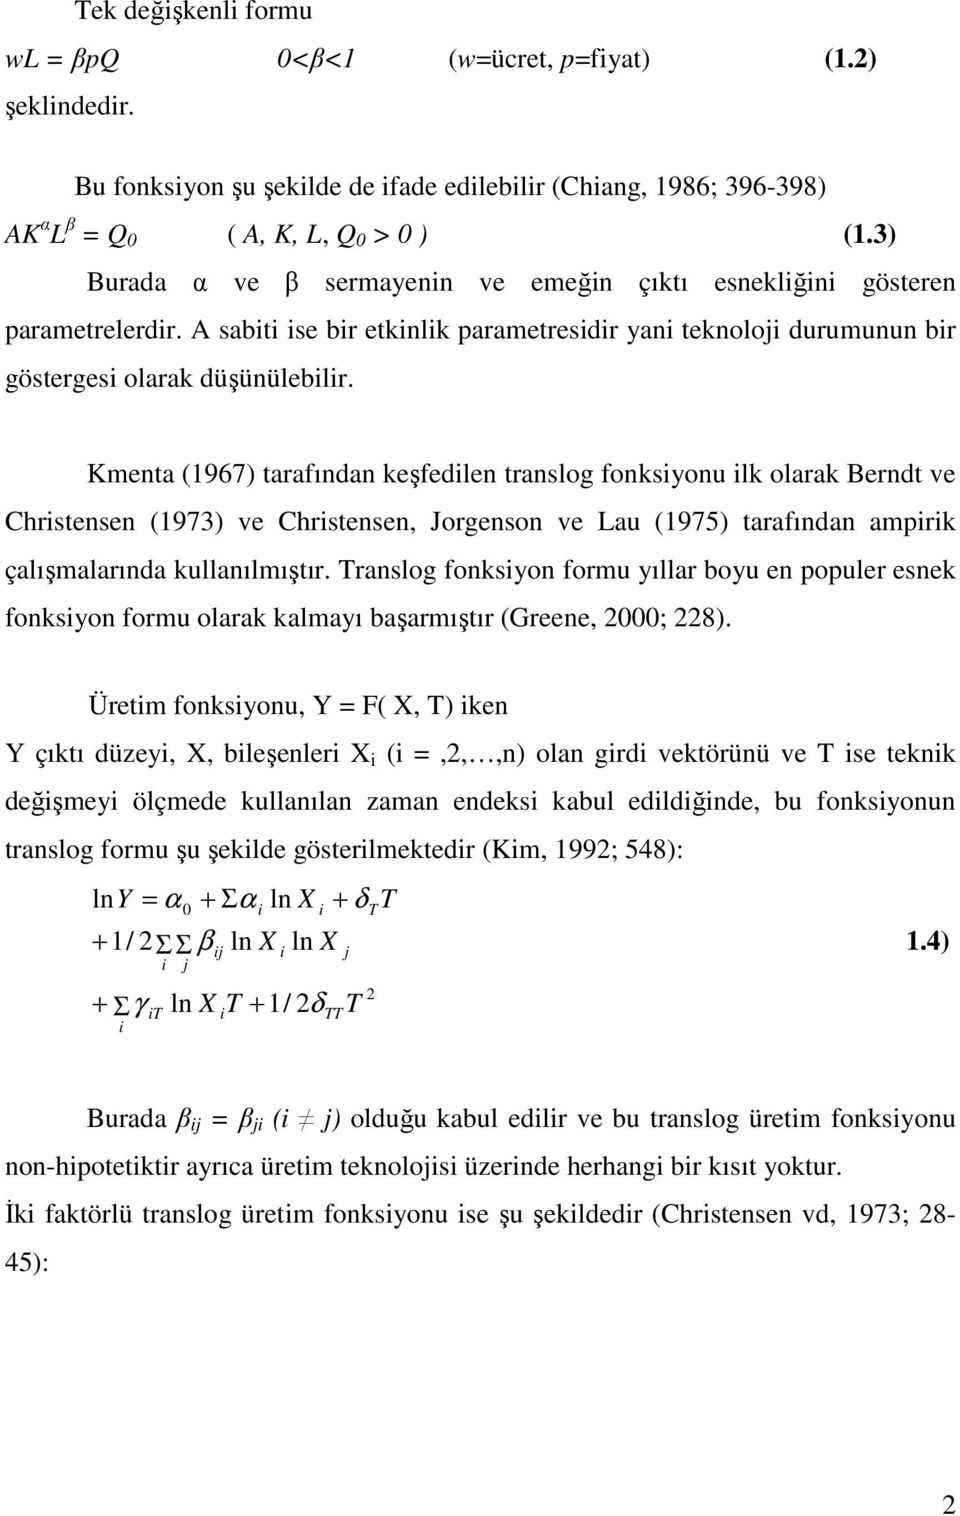 Kmena (967) arafından keşfedlen ranslog fonksyonu lk olarak Bernd ve Chrsensen (973) ve Chrsensen, Jorgenson ve Lau (975) arafından amprk çalışmalarında kullanılmışır.